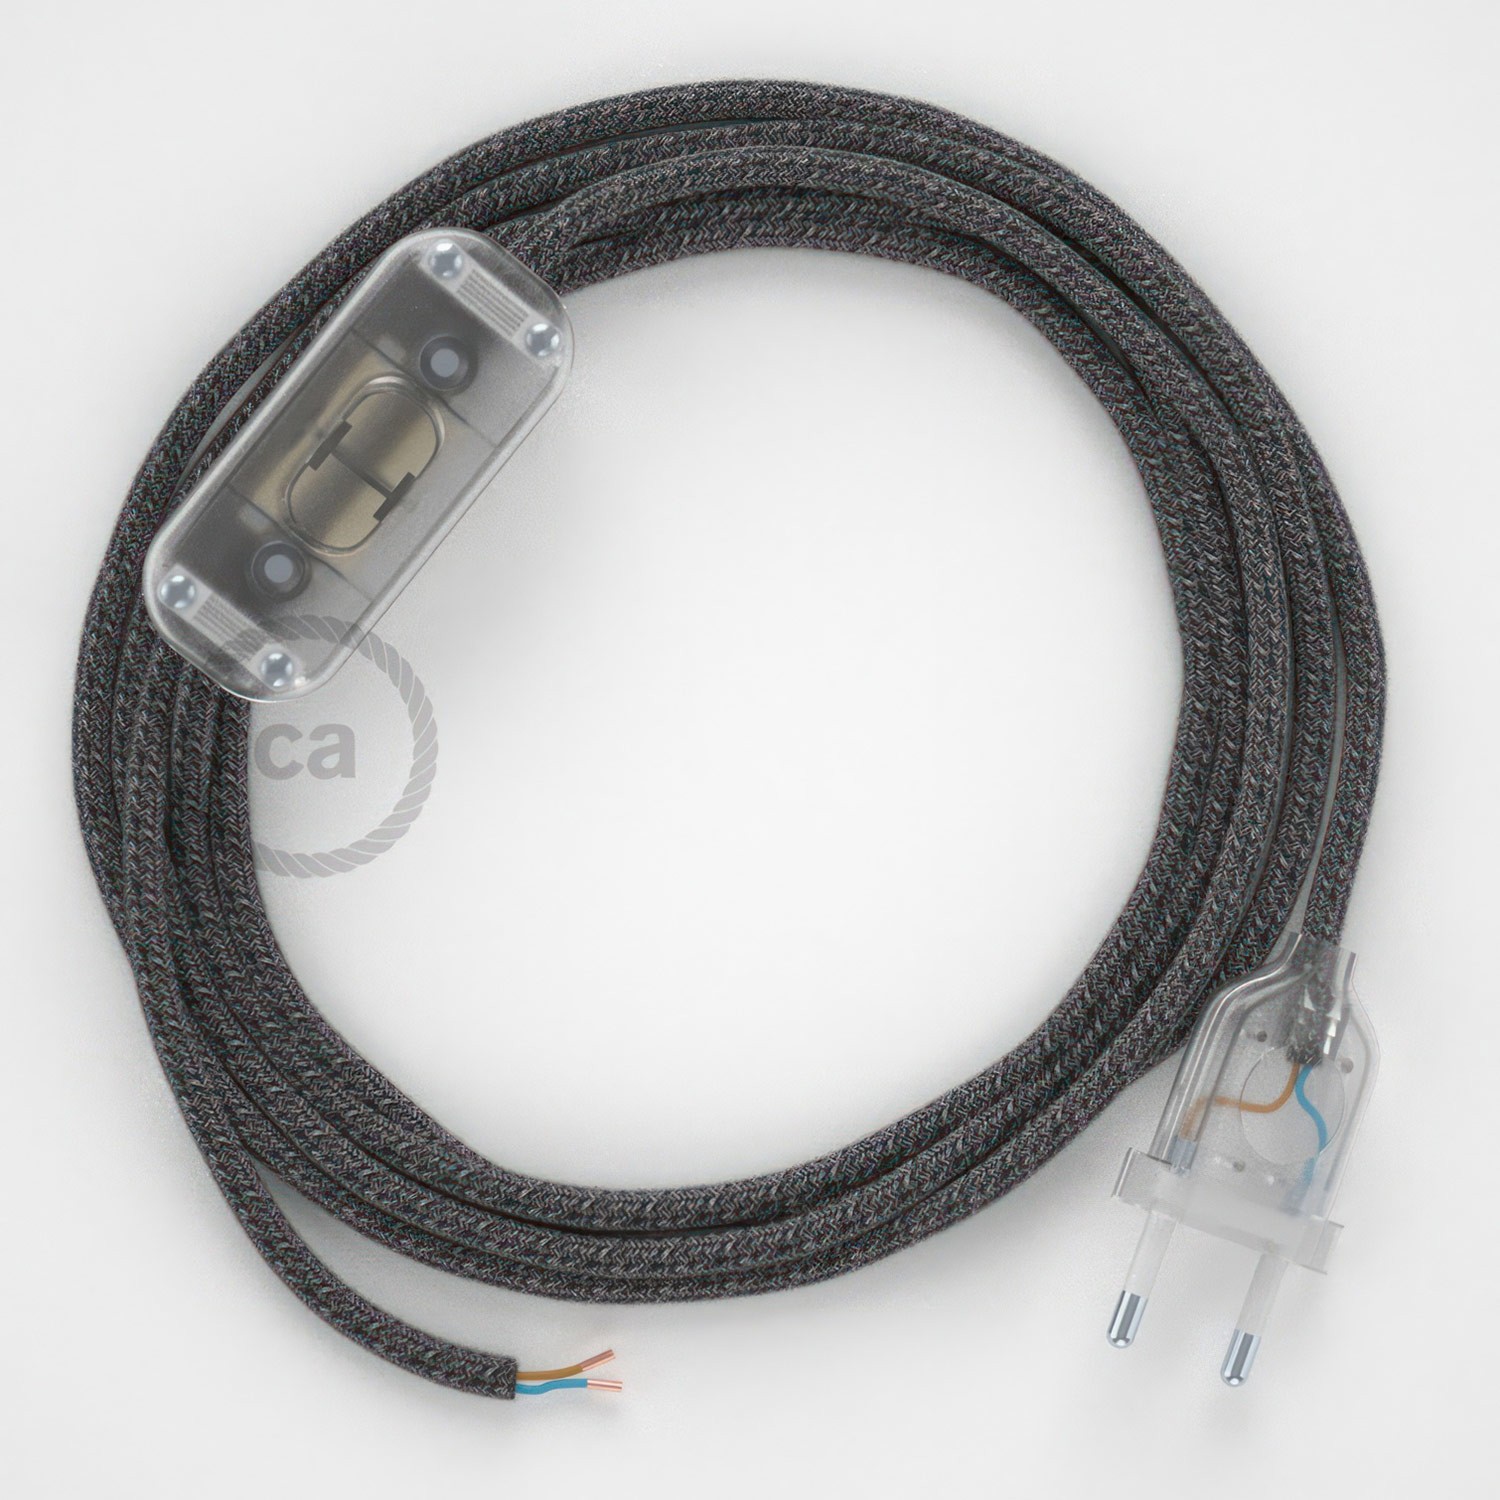 Cableado para lámpara, cable RS81 Algodón y Lino Natural Negro 1,8m. Elige tu el color de la clavija y del interruptor!